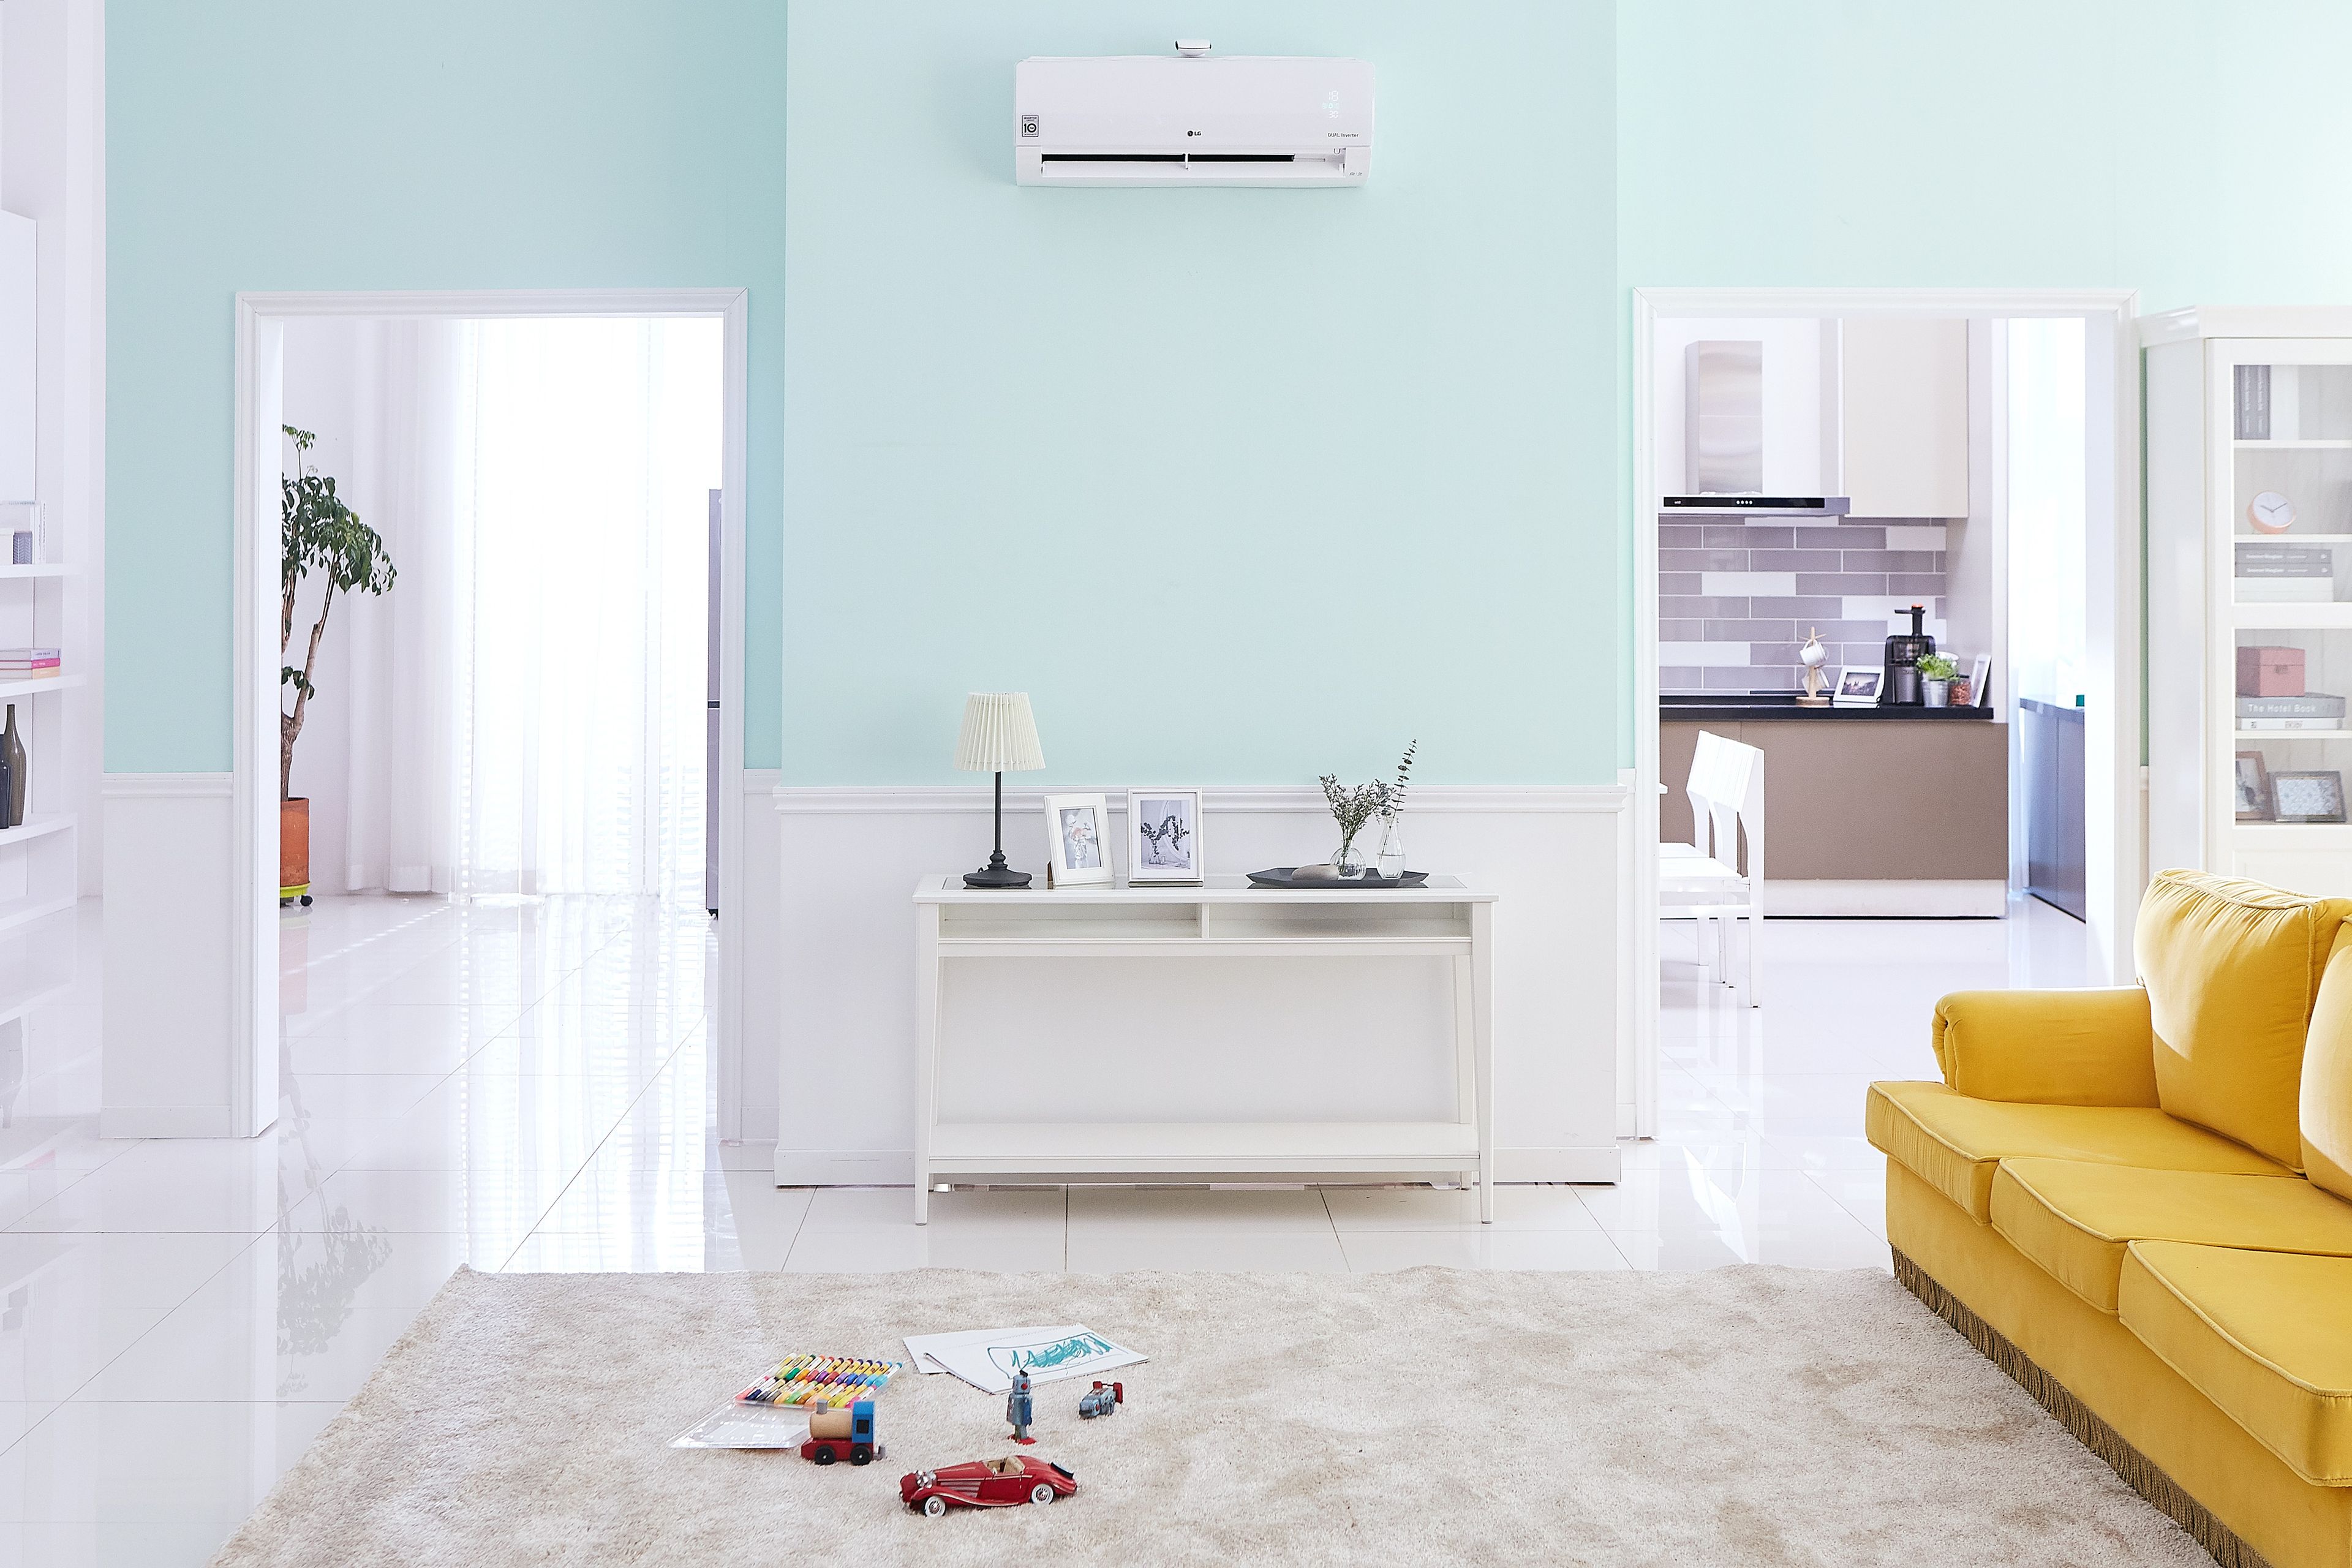 Los equipos de aire acondicionado más modernos llevan a cabo una doble función higienizante con las tecnologías más avanzadas y eficaces